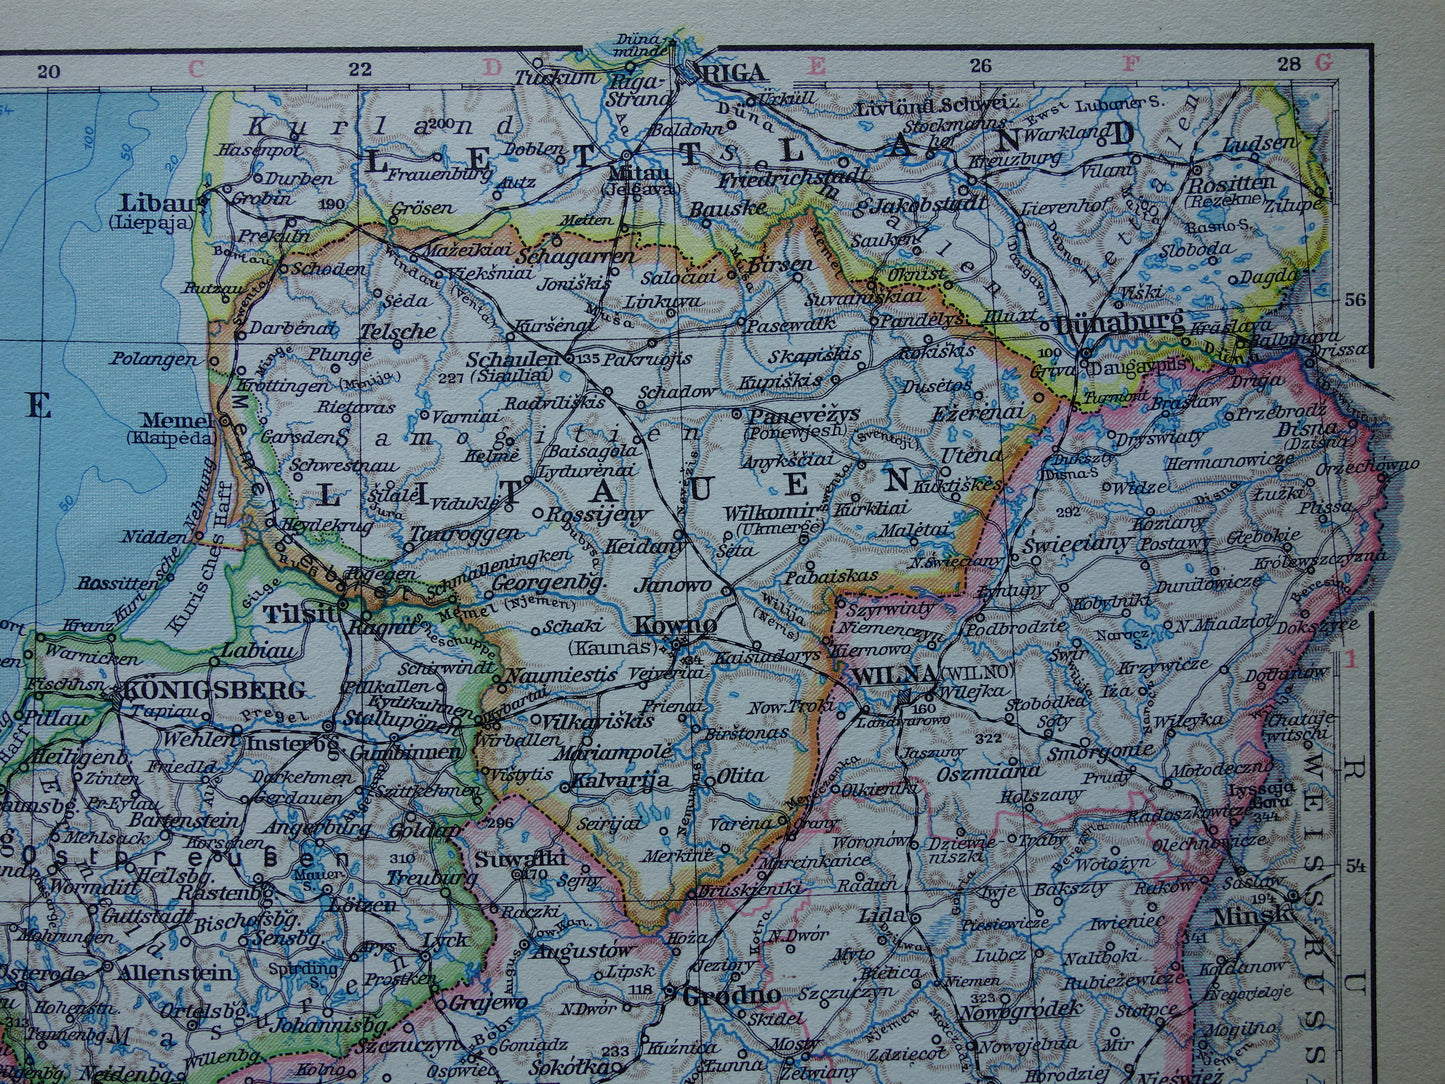 POLEN oude landkaart van Polen uit het jaar 1931 origineel vintage kaart print Polen historische kaarten